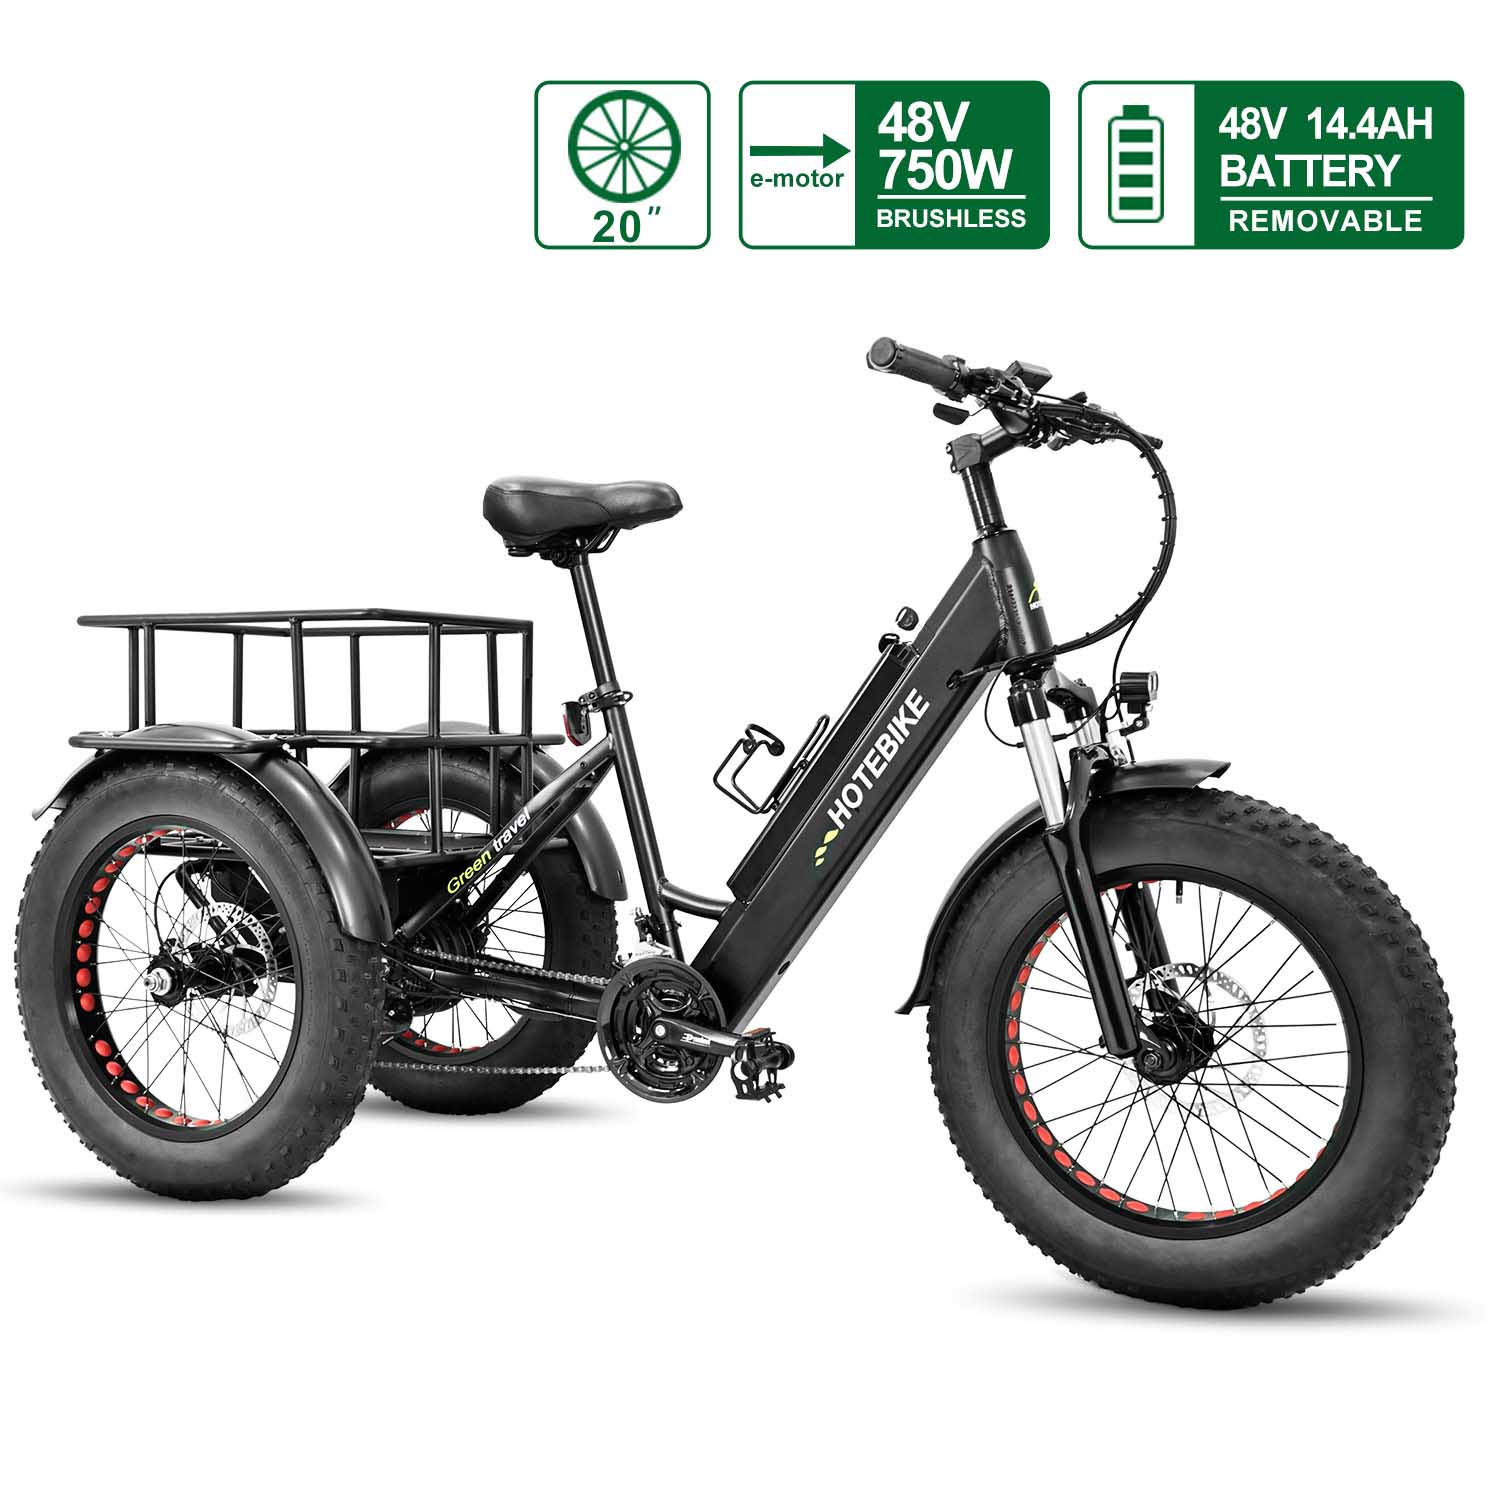 Bicicleta eléctrica de 3 ruedas 20 pulgadas 750W Triciclo